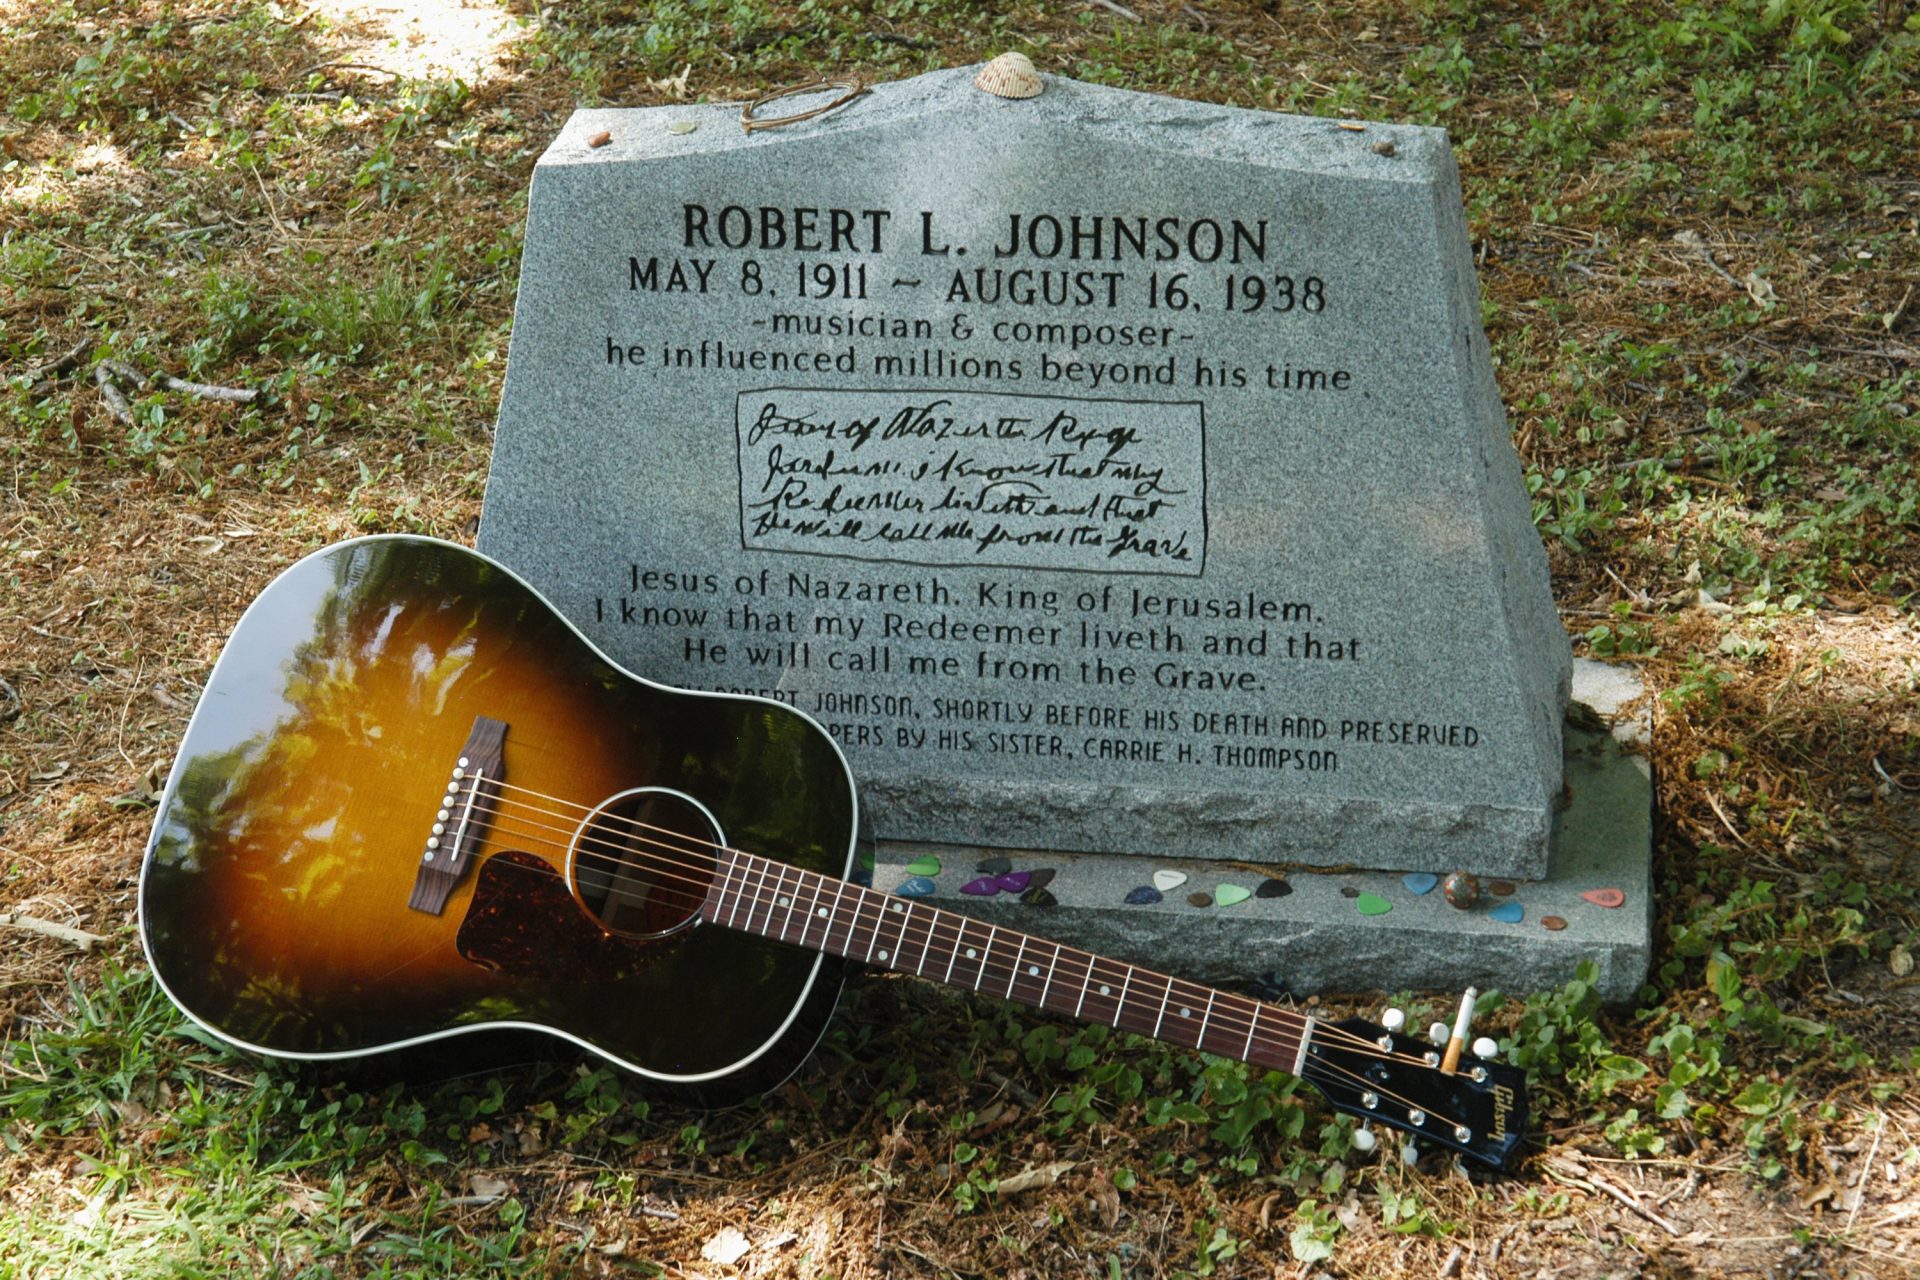 <p>"Resting in the Blues" è la leggenda che circola da anni. In effetti, l'epitaffio lo ricorda come "un musicista e compositore che ha influenzato milioni di persone oltre il suo tempo".</p>